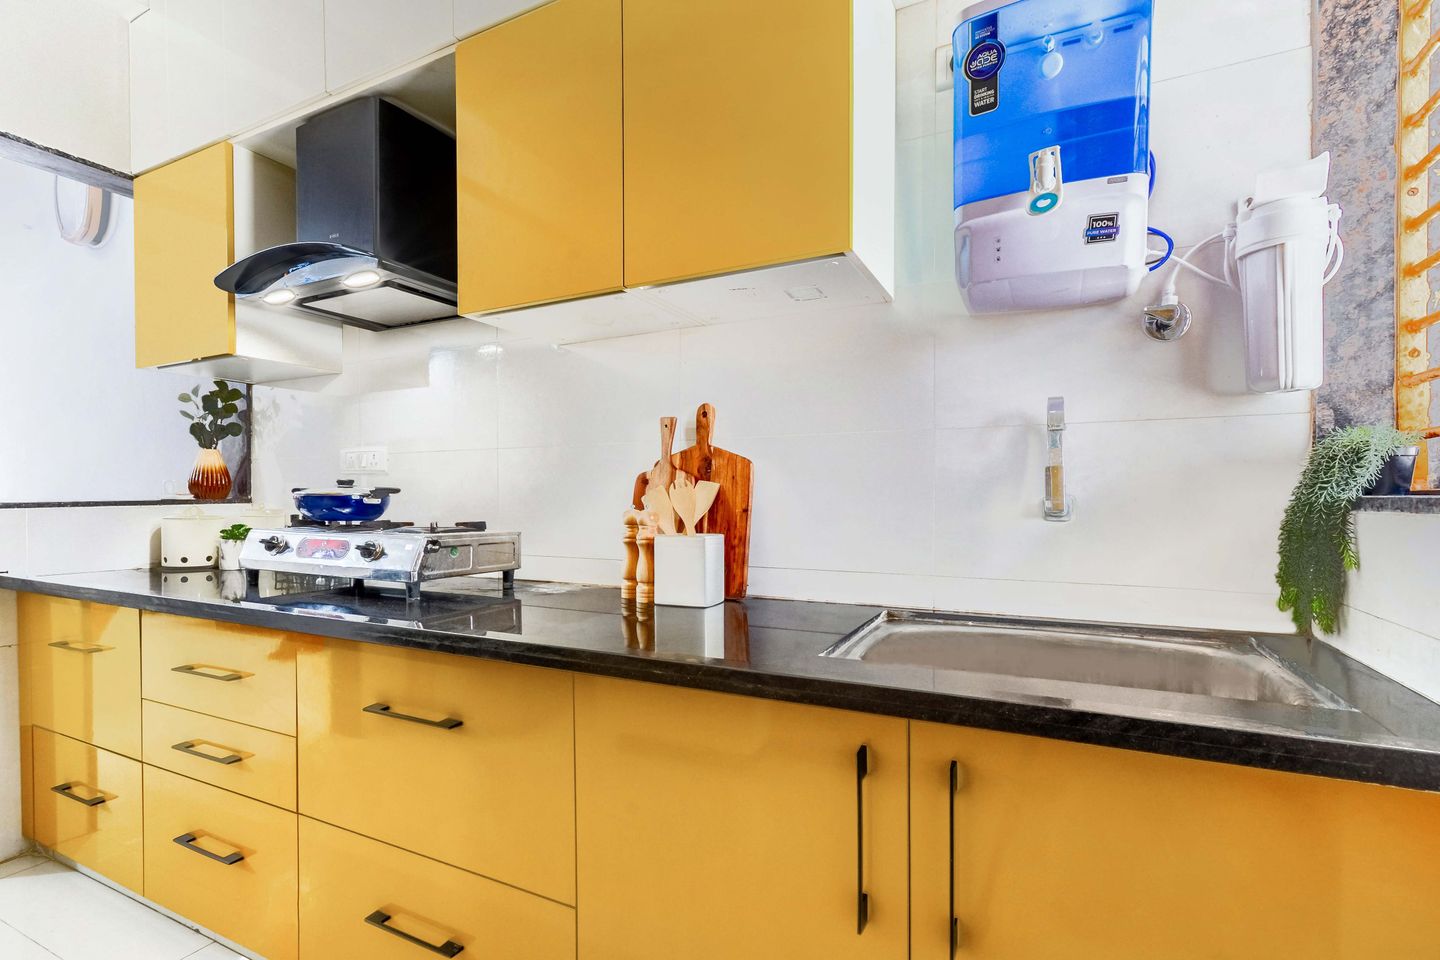 Modern Parallel Kitchen Cabinet Design With Loft Storage